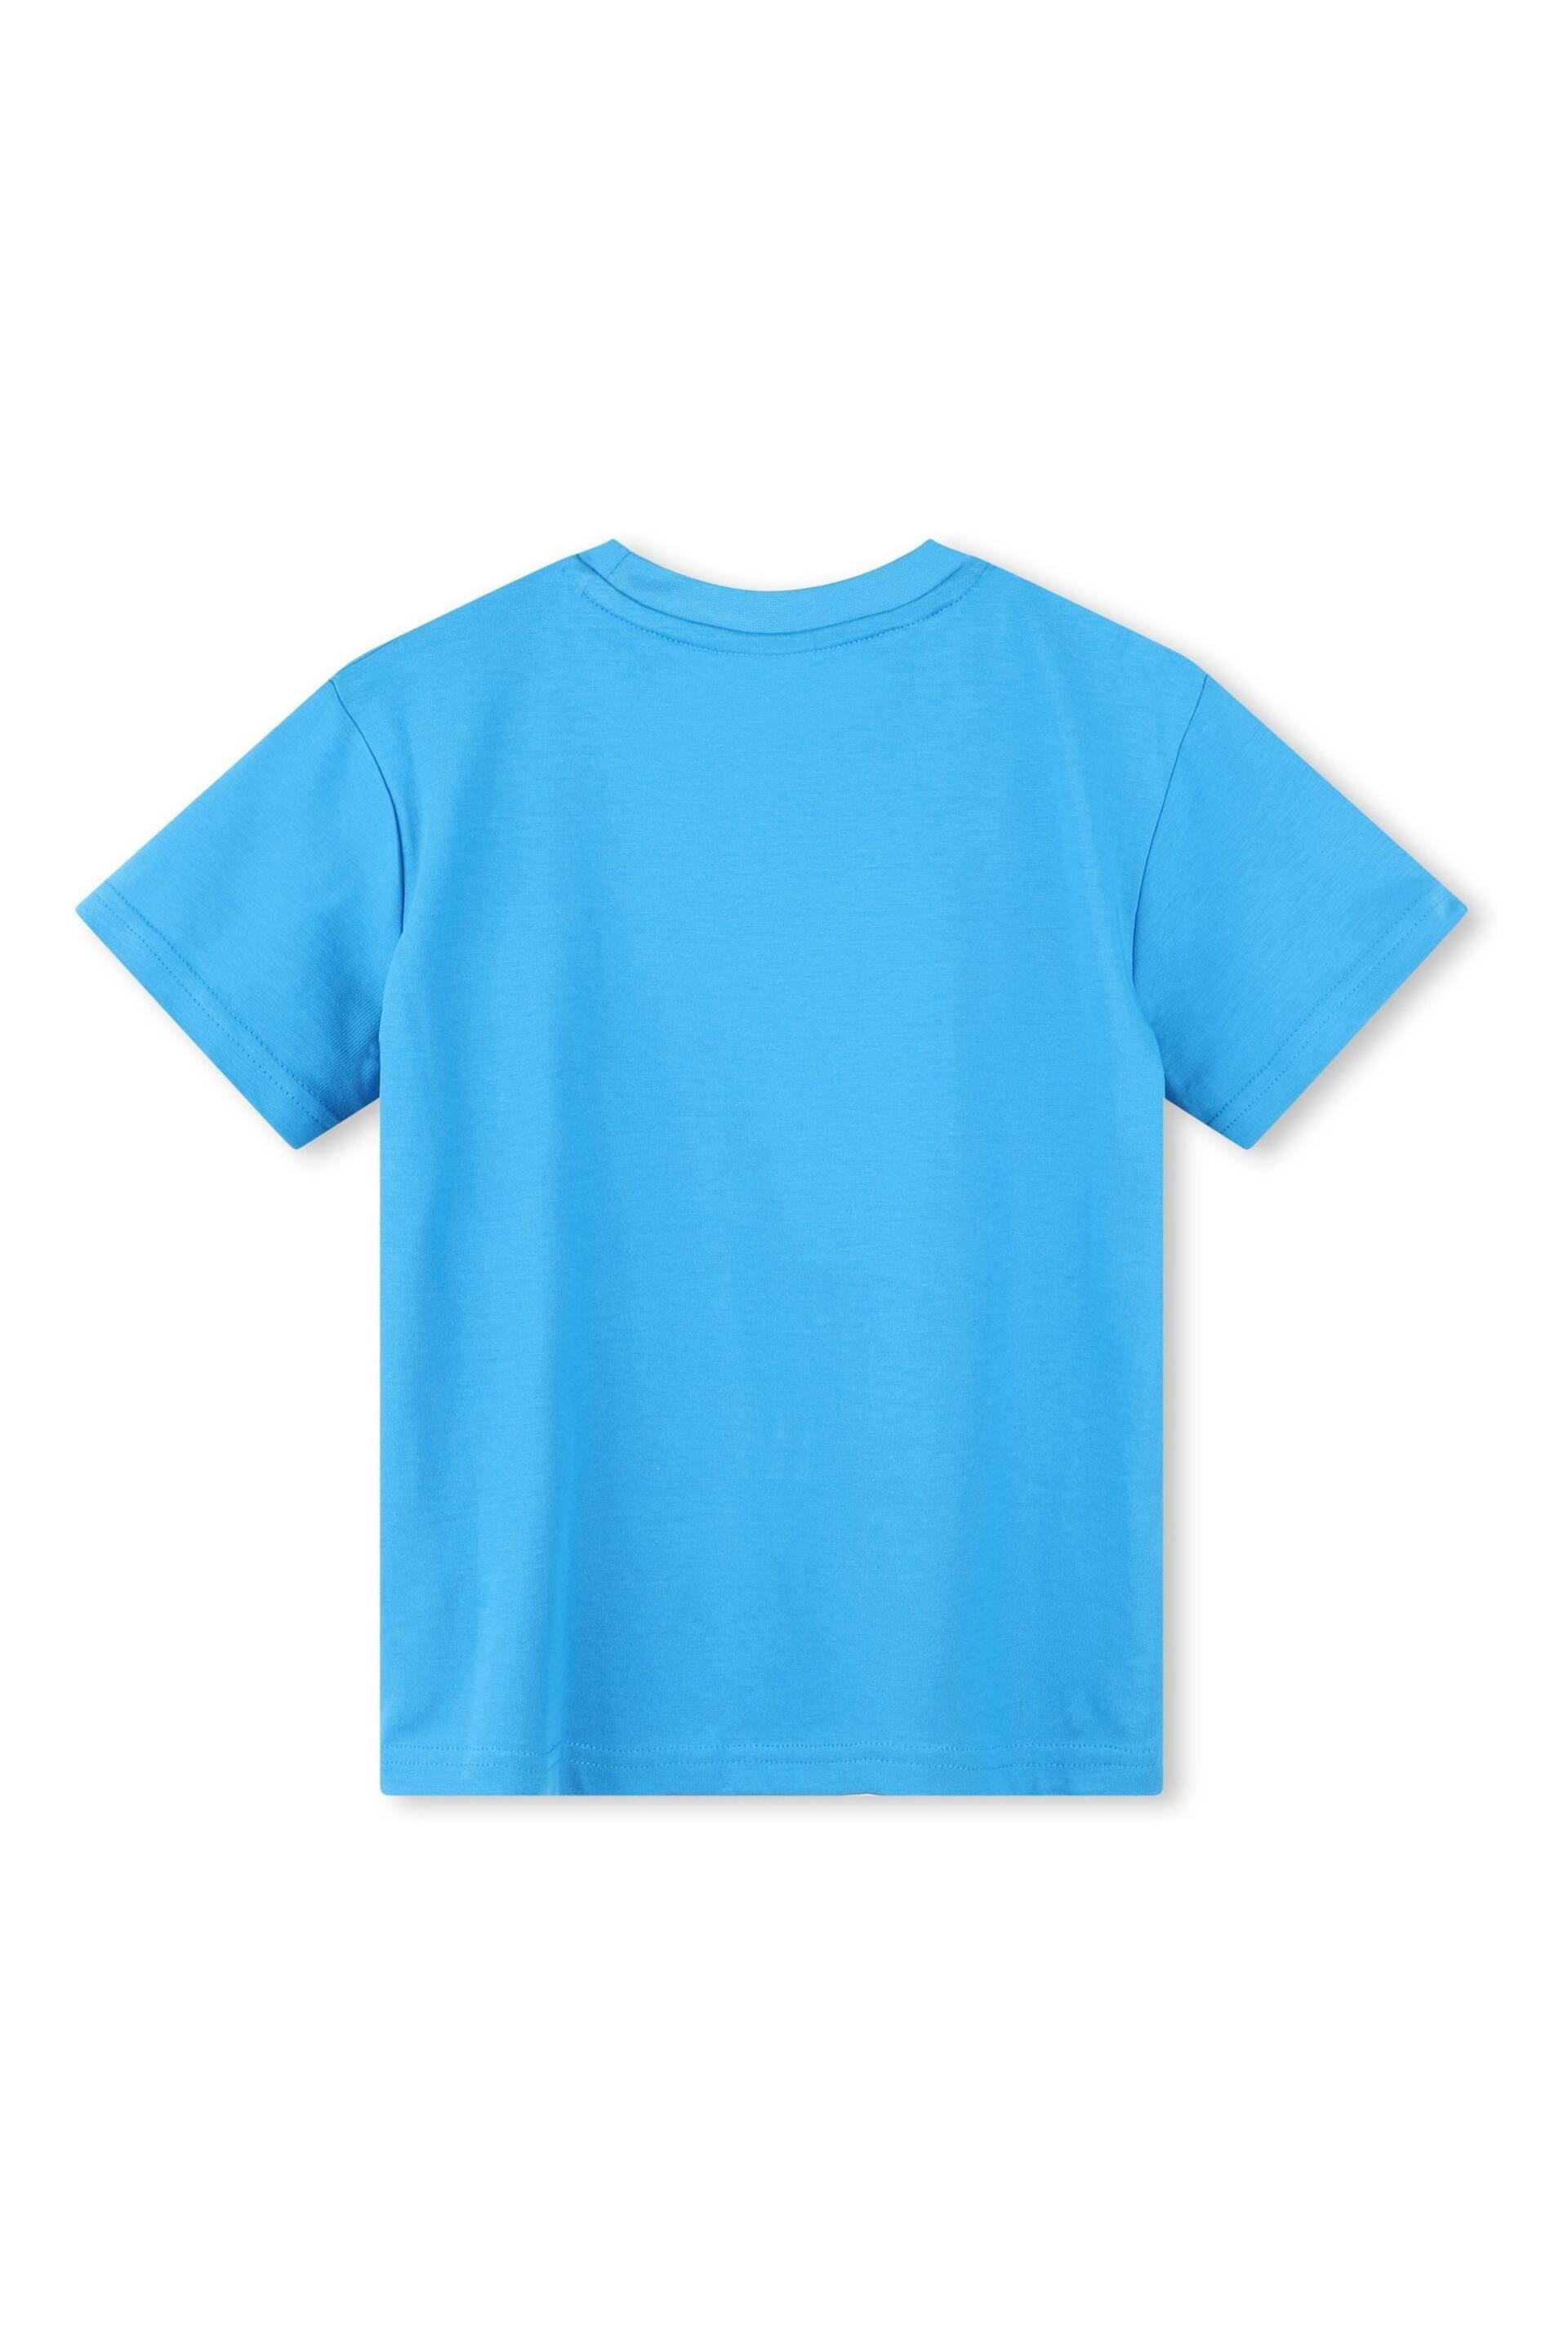 HUGO Blue Logo Short Sleeve T-Shirt - Image 2 of 2